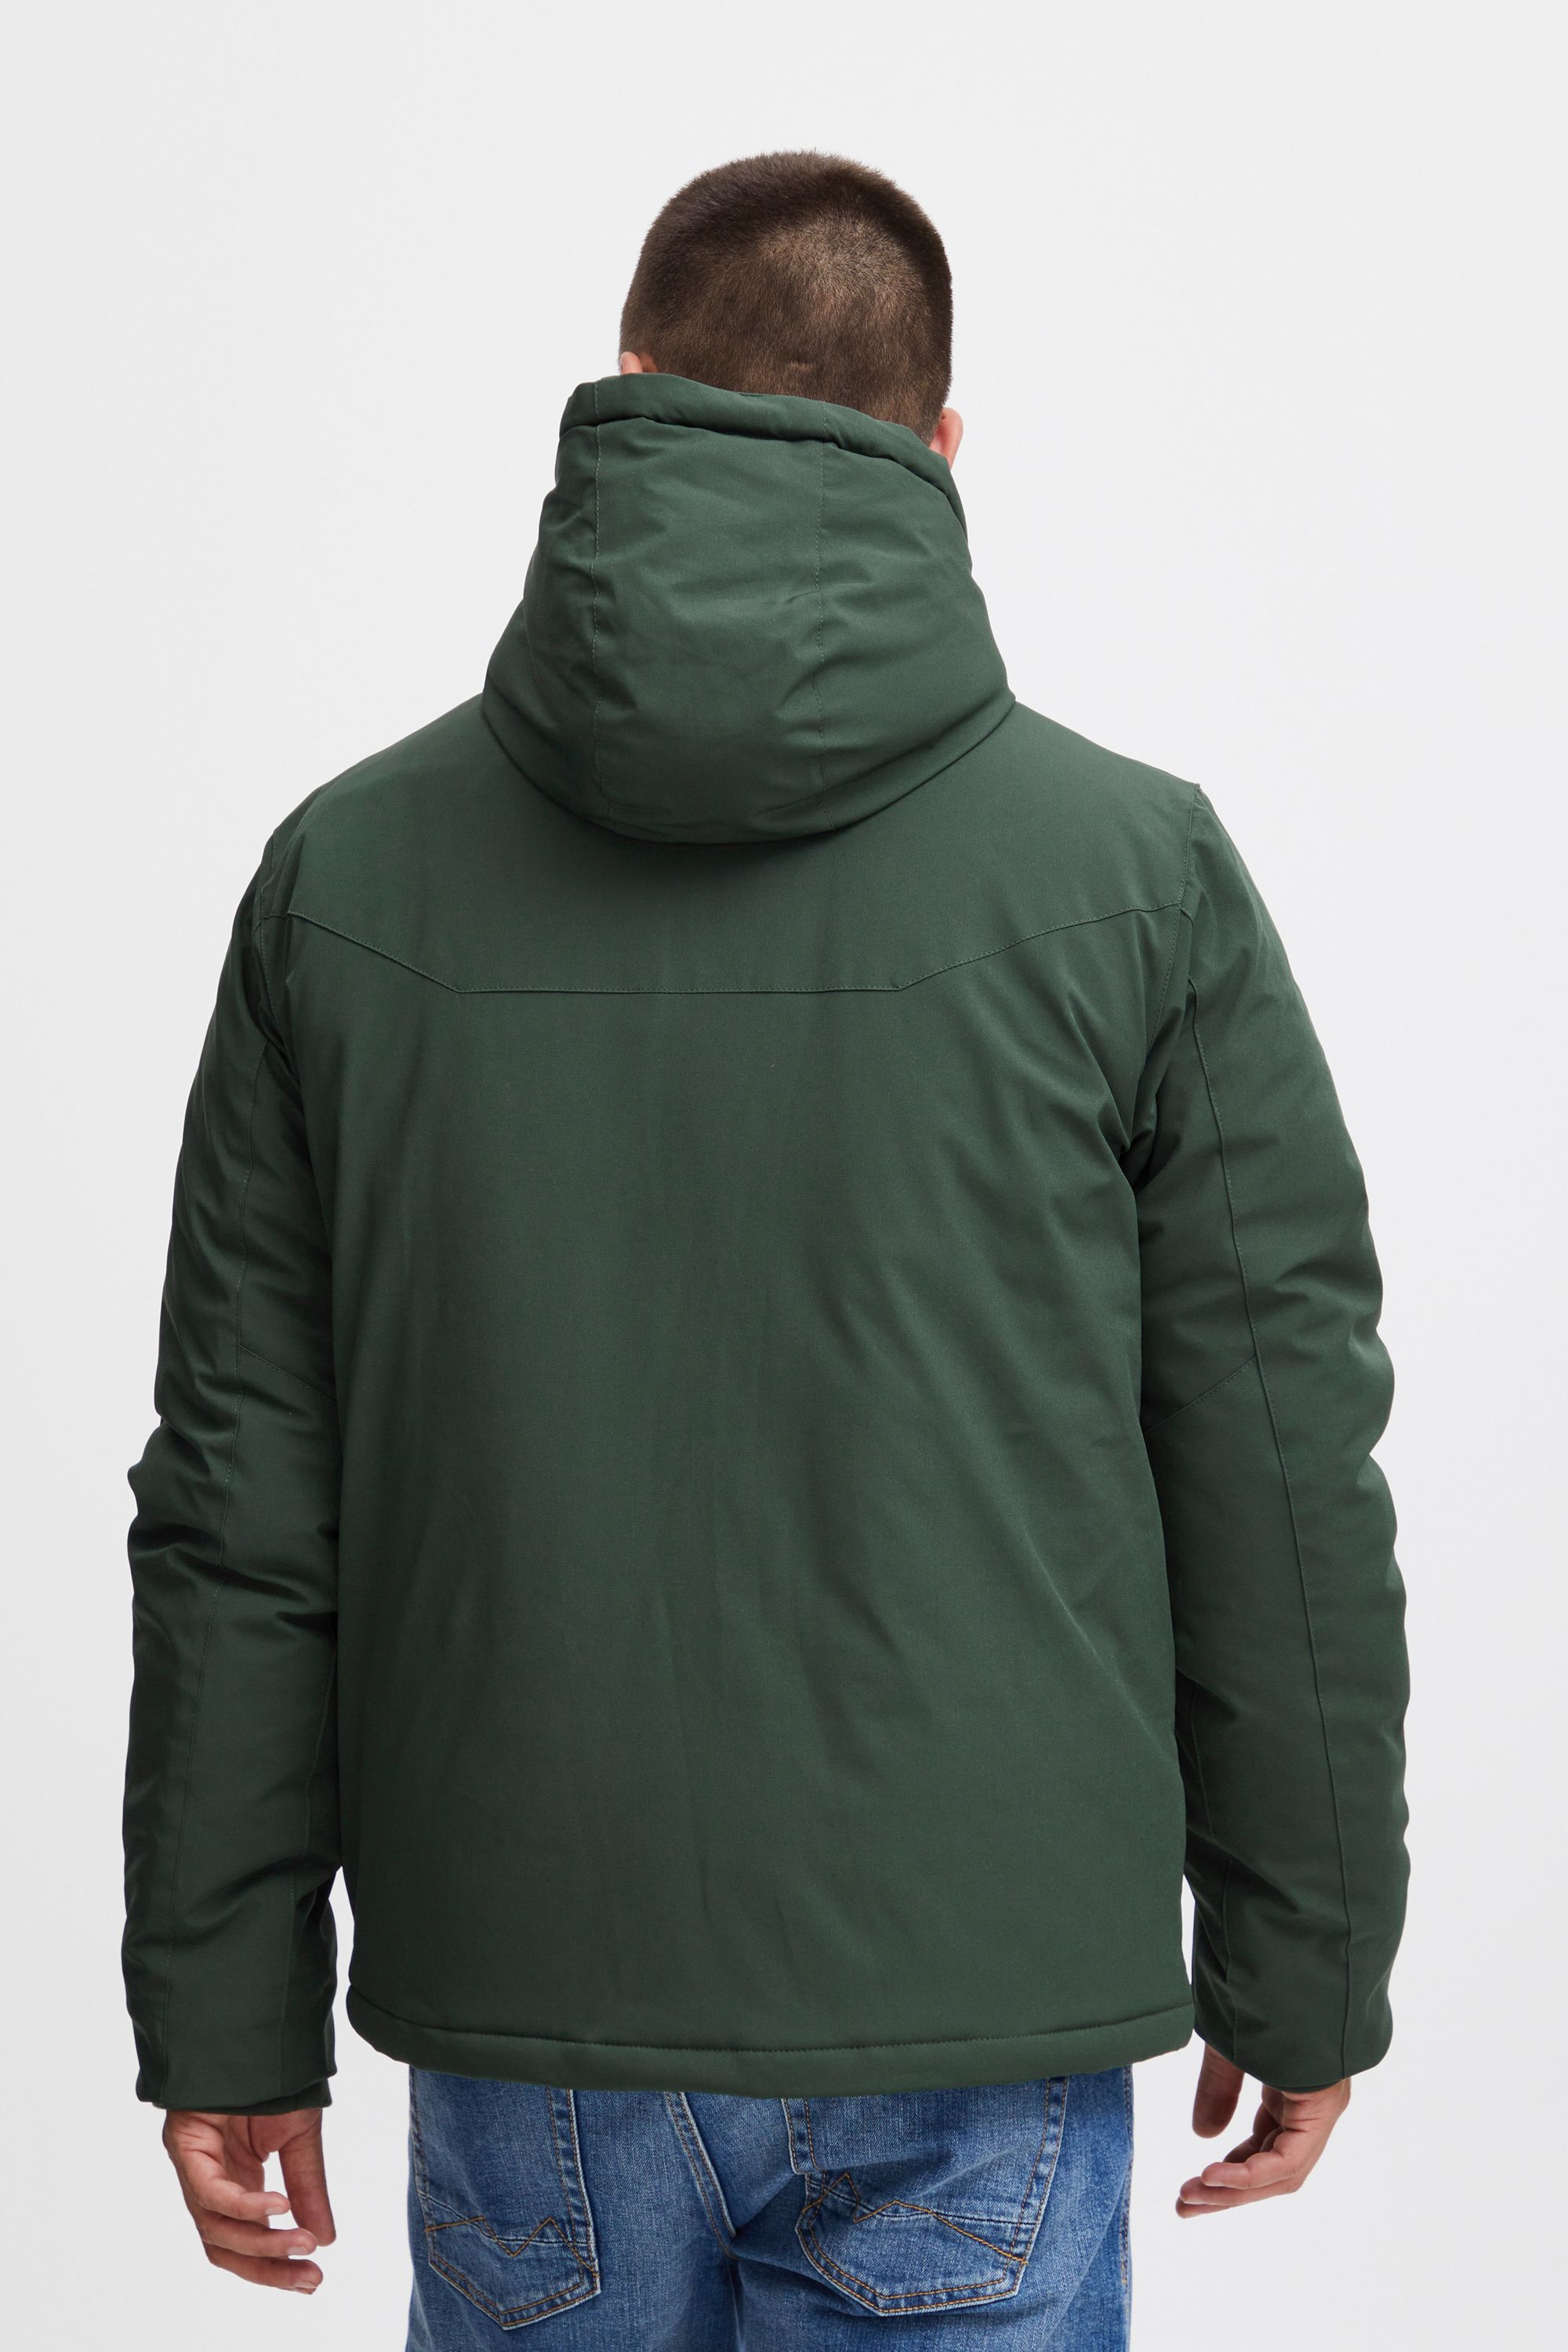 Куртка BLEND Kurzjacke BHJacket 20715881, зеленый куртка blend kurzjacke bhouterwear 20715931 зеленый